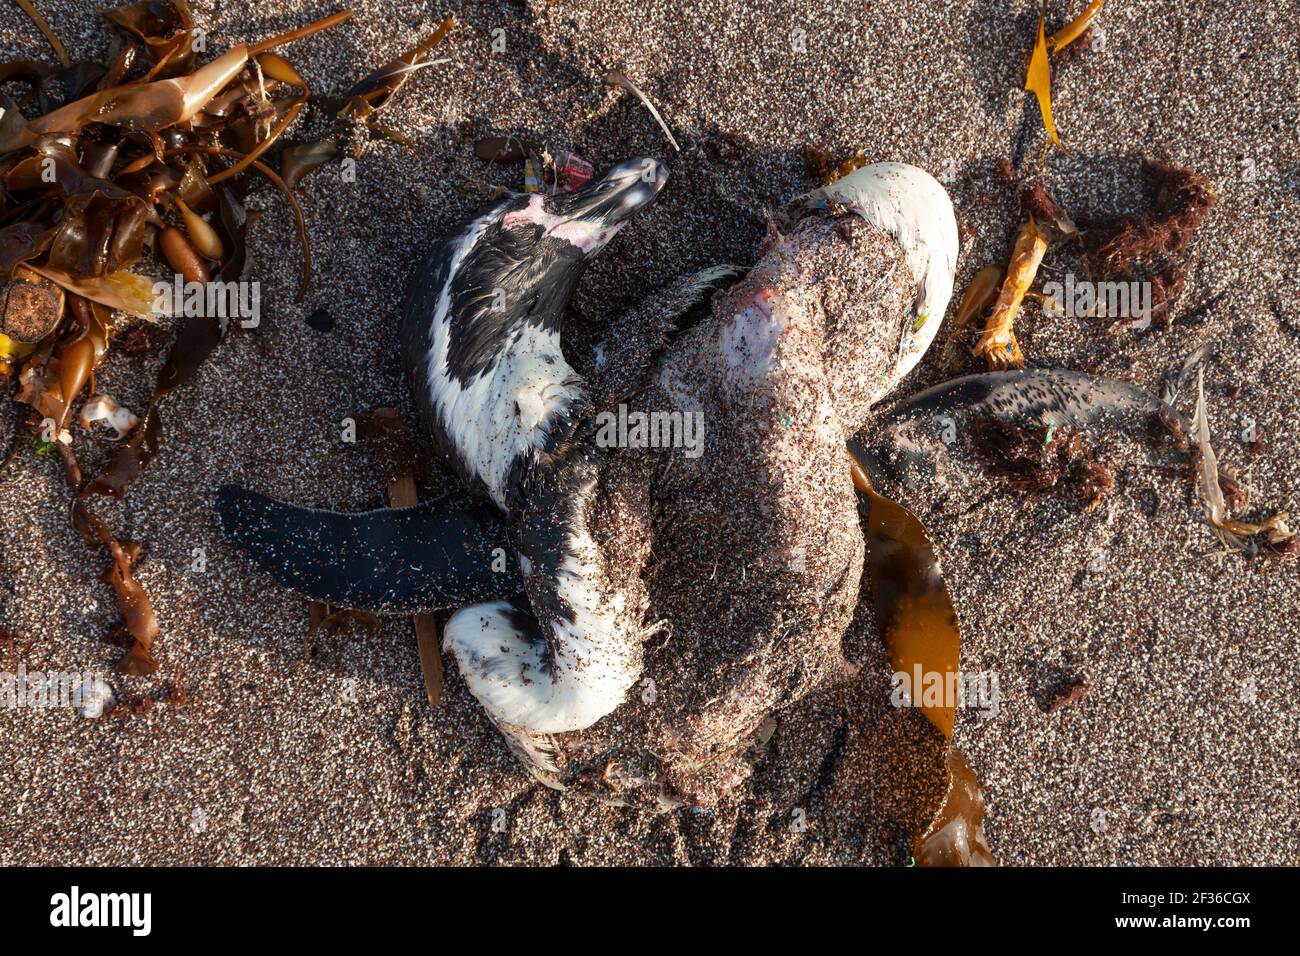 Le cadavre, brisé, tordu et en décomposition, de certaines espèces d'oiseaux de mer ou de pingouins Humboldt morts, près de Playa Roja, sur la route Lagunillas, dans le par Banque D'Images